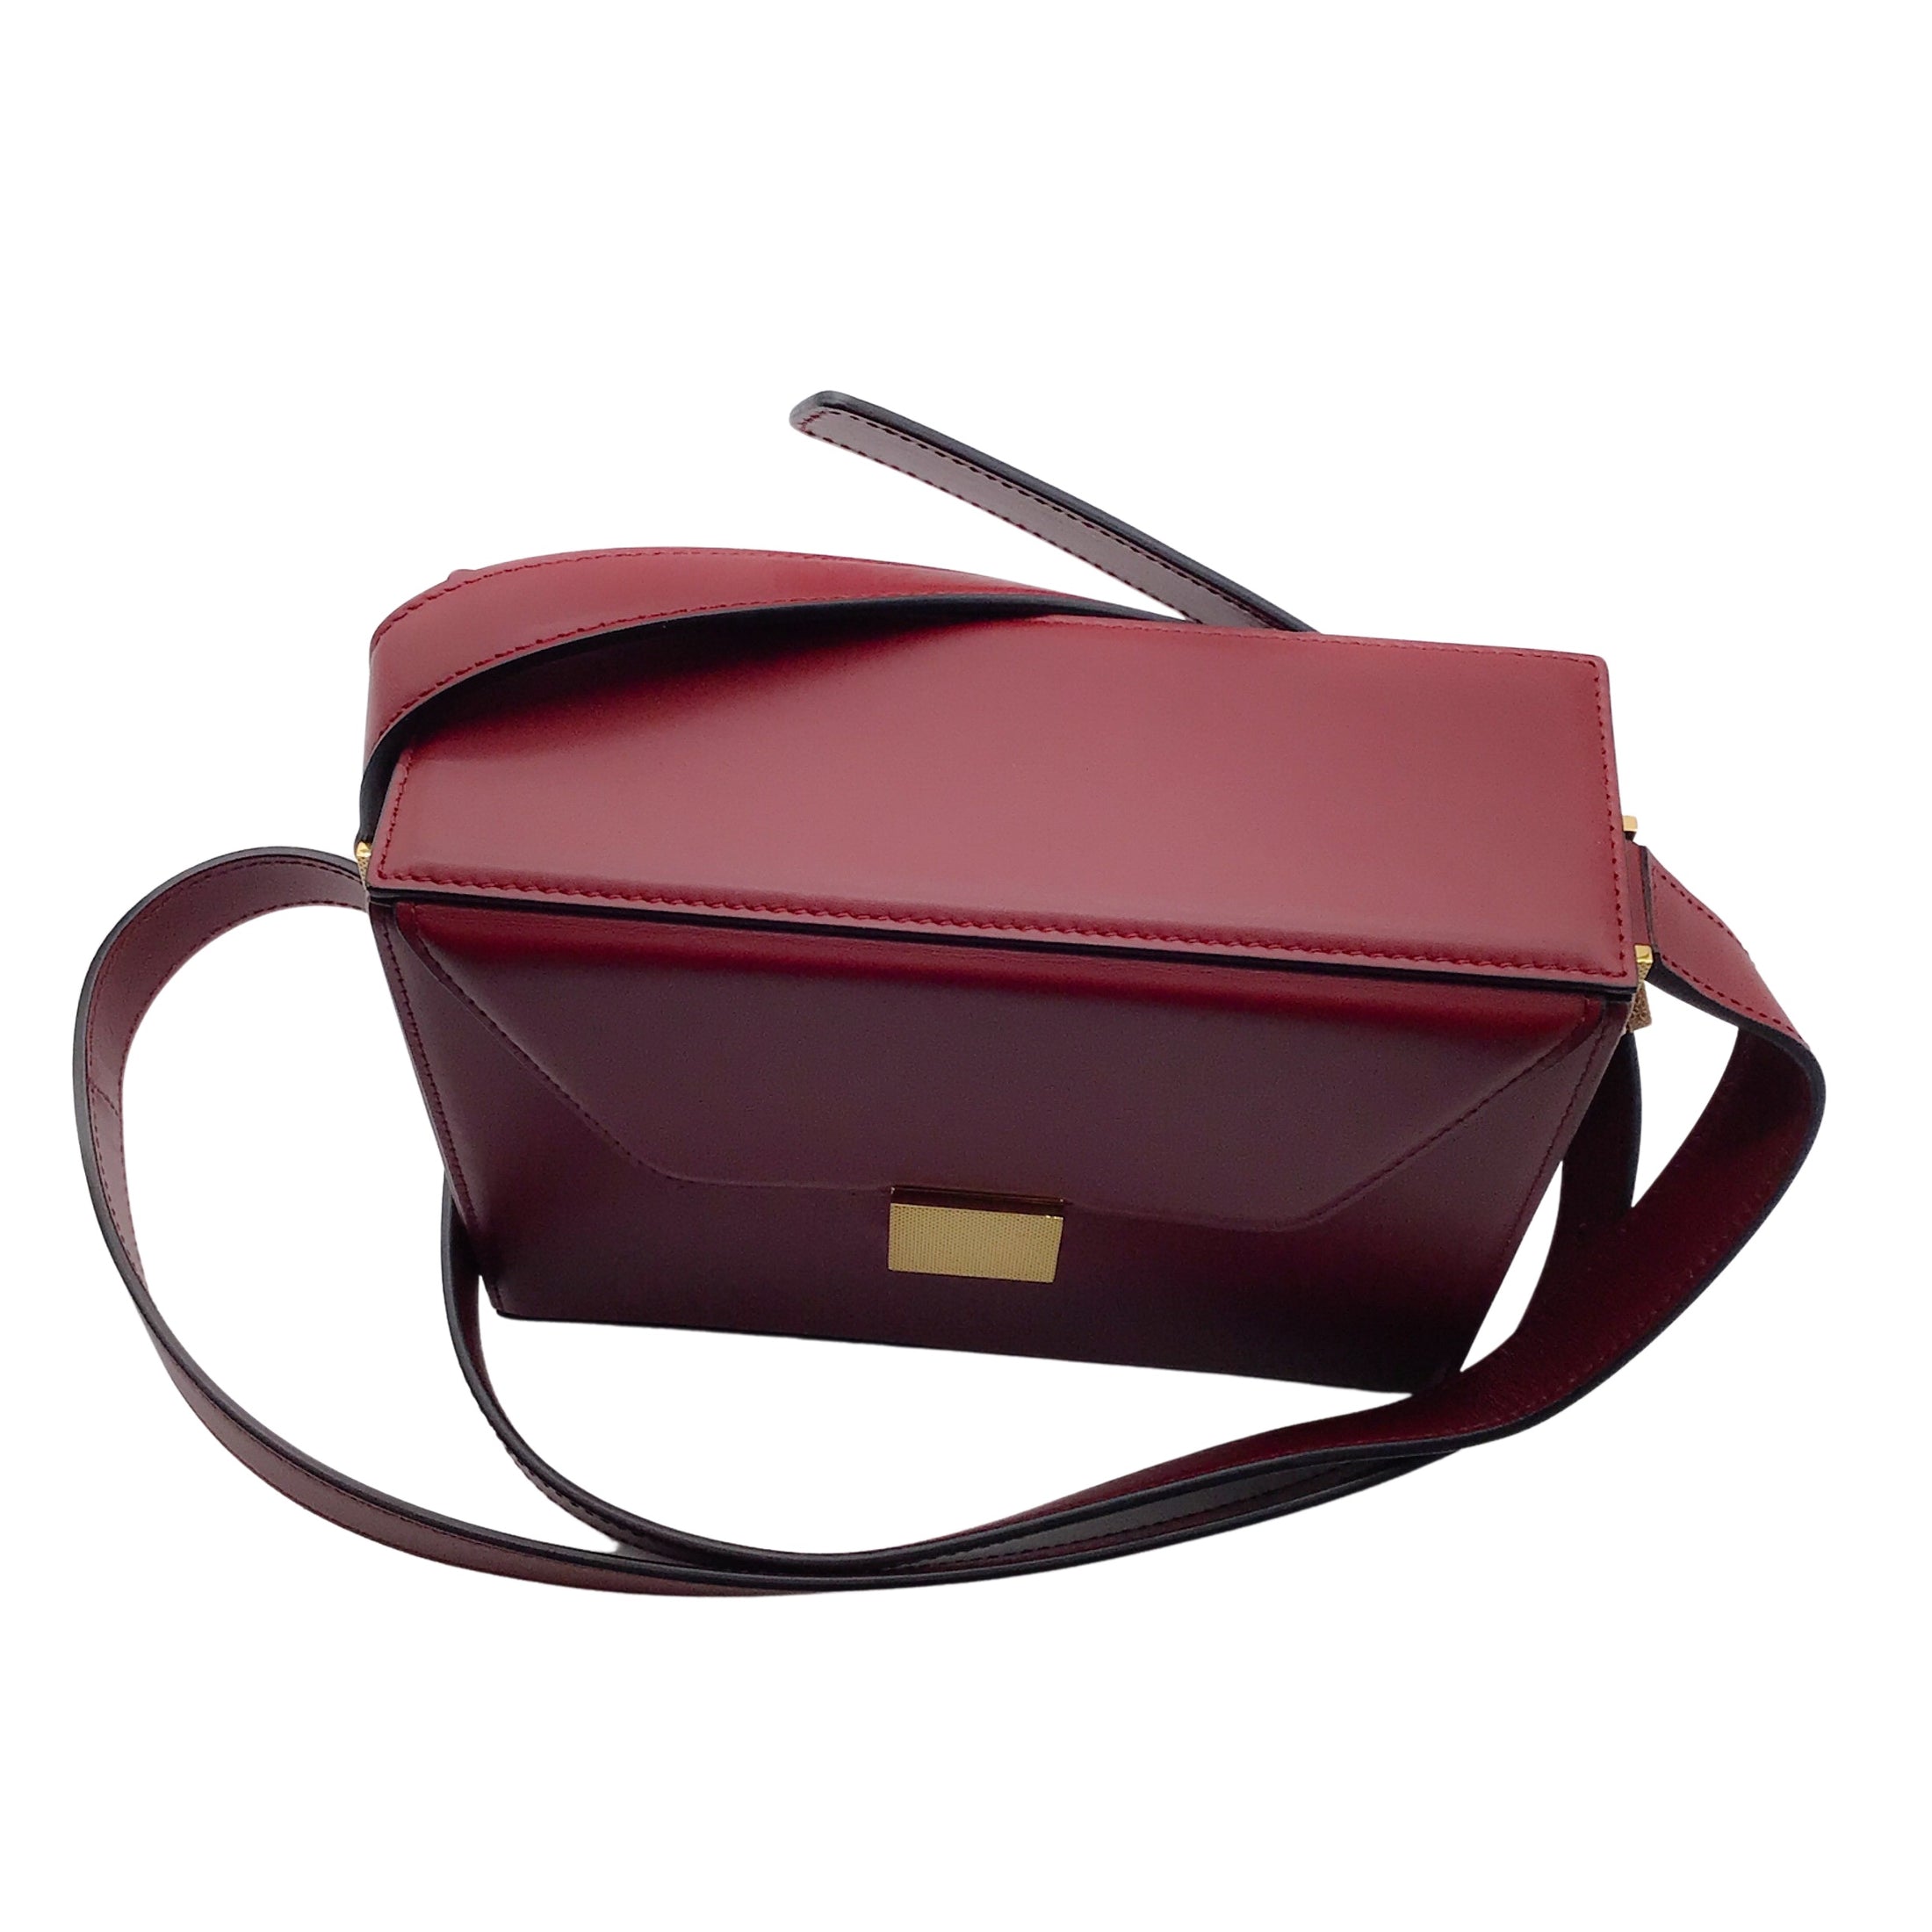 Victoria Beckham Vanity Red Leather Shoulder Bag